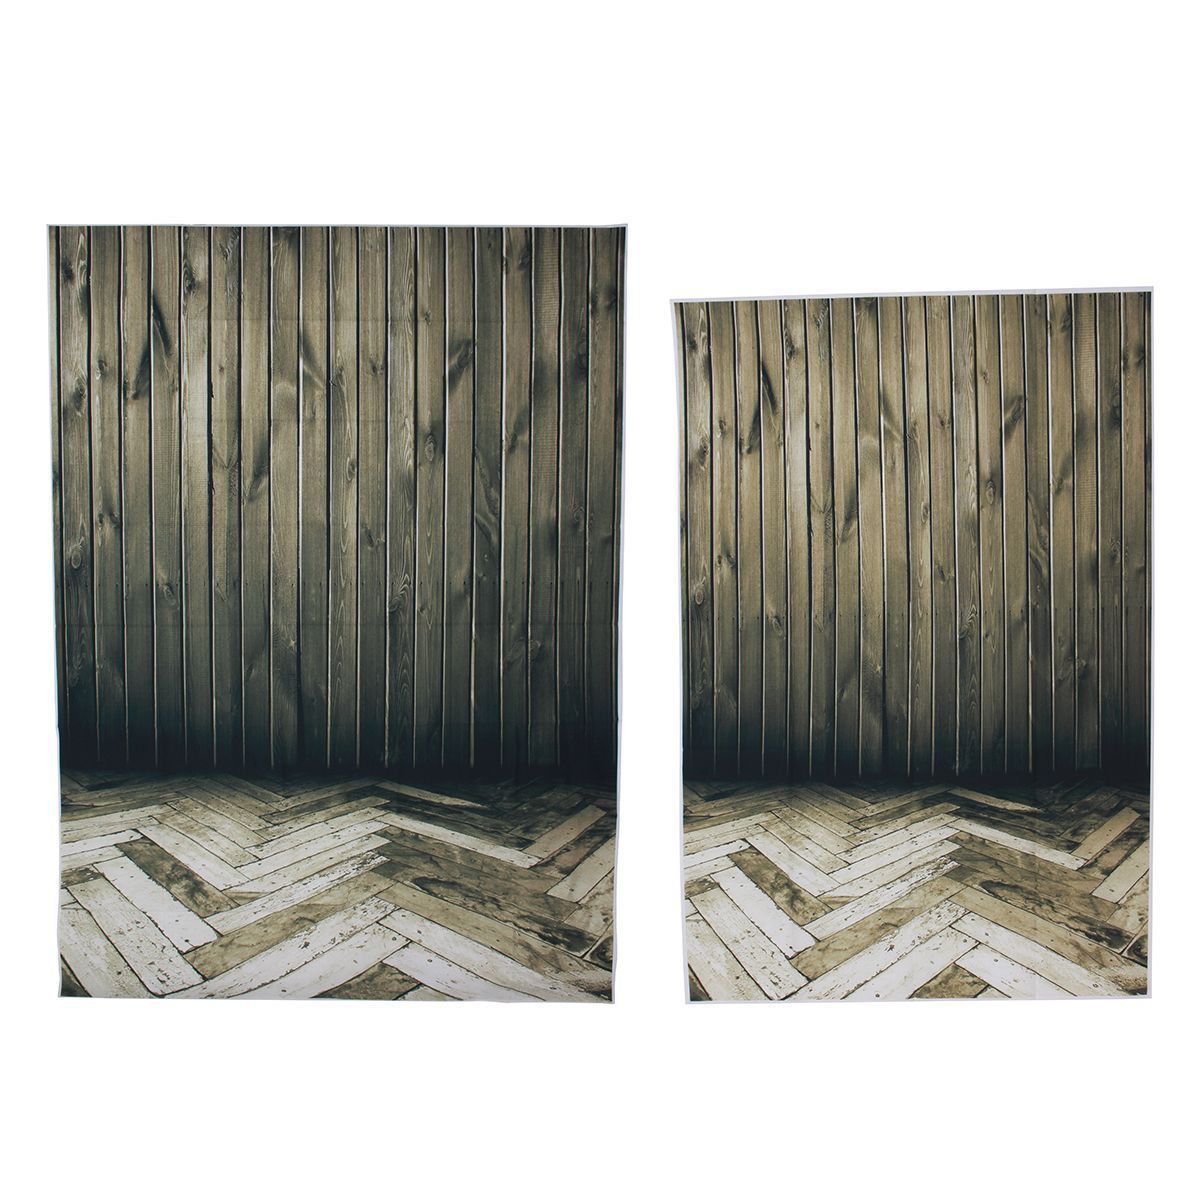 3x5FT-5x7FT-Vinyl-Dark-Wood-Wall-Floor-Photography-Backdrop-Background-Studio-Prop-1408241